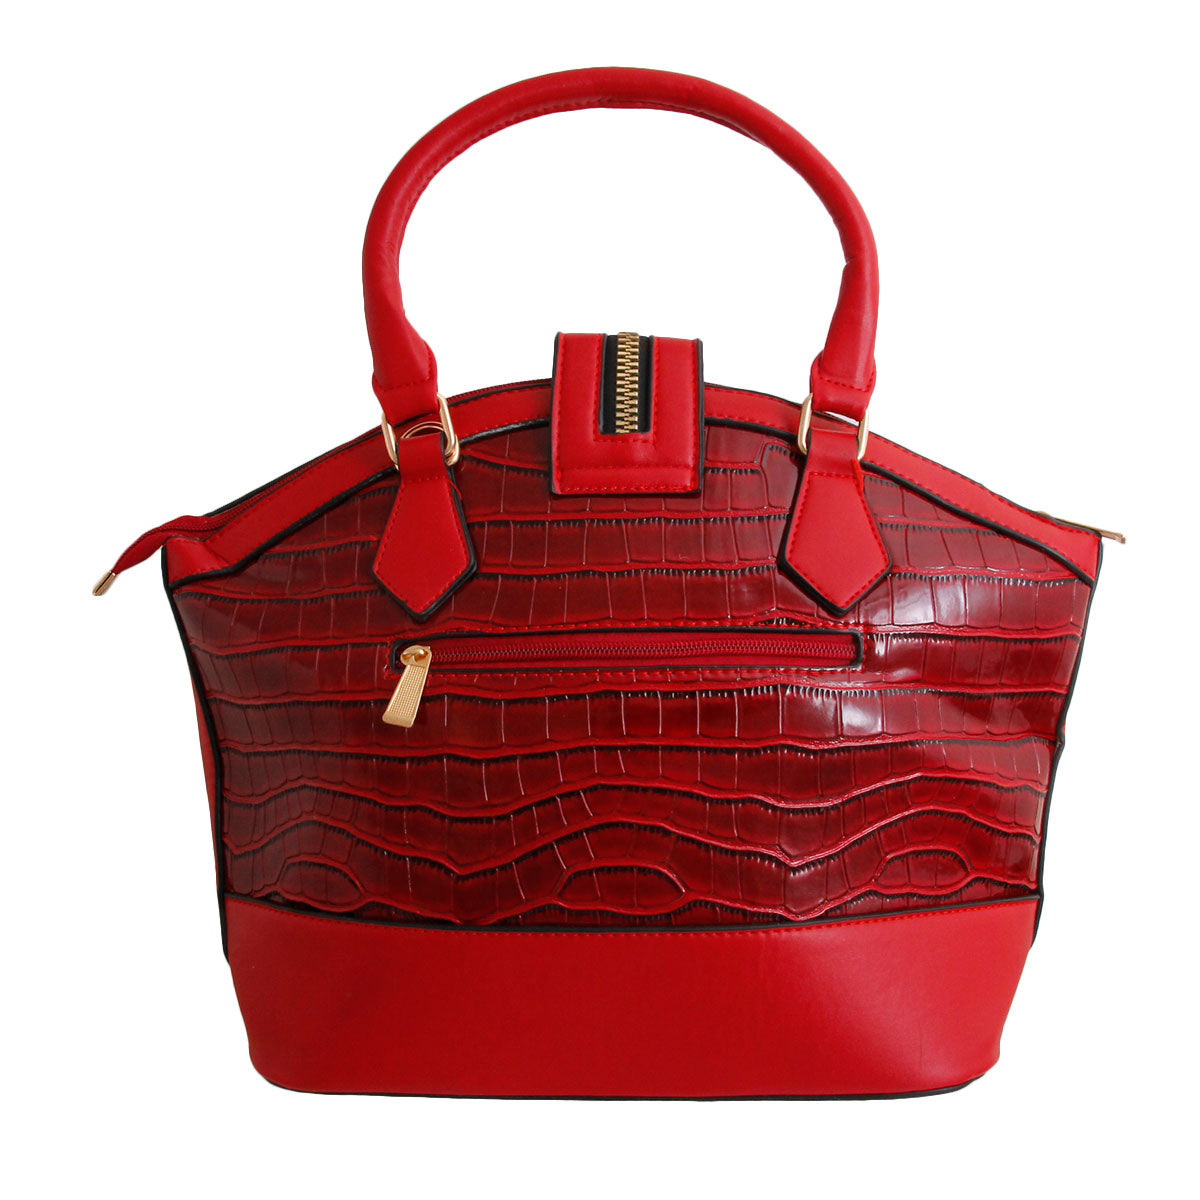 Red Croc Zipper Tote Handbag